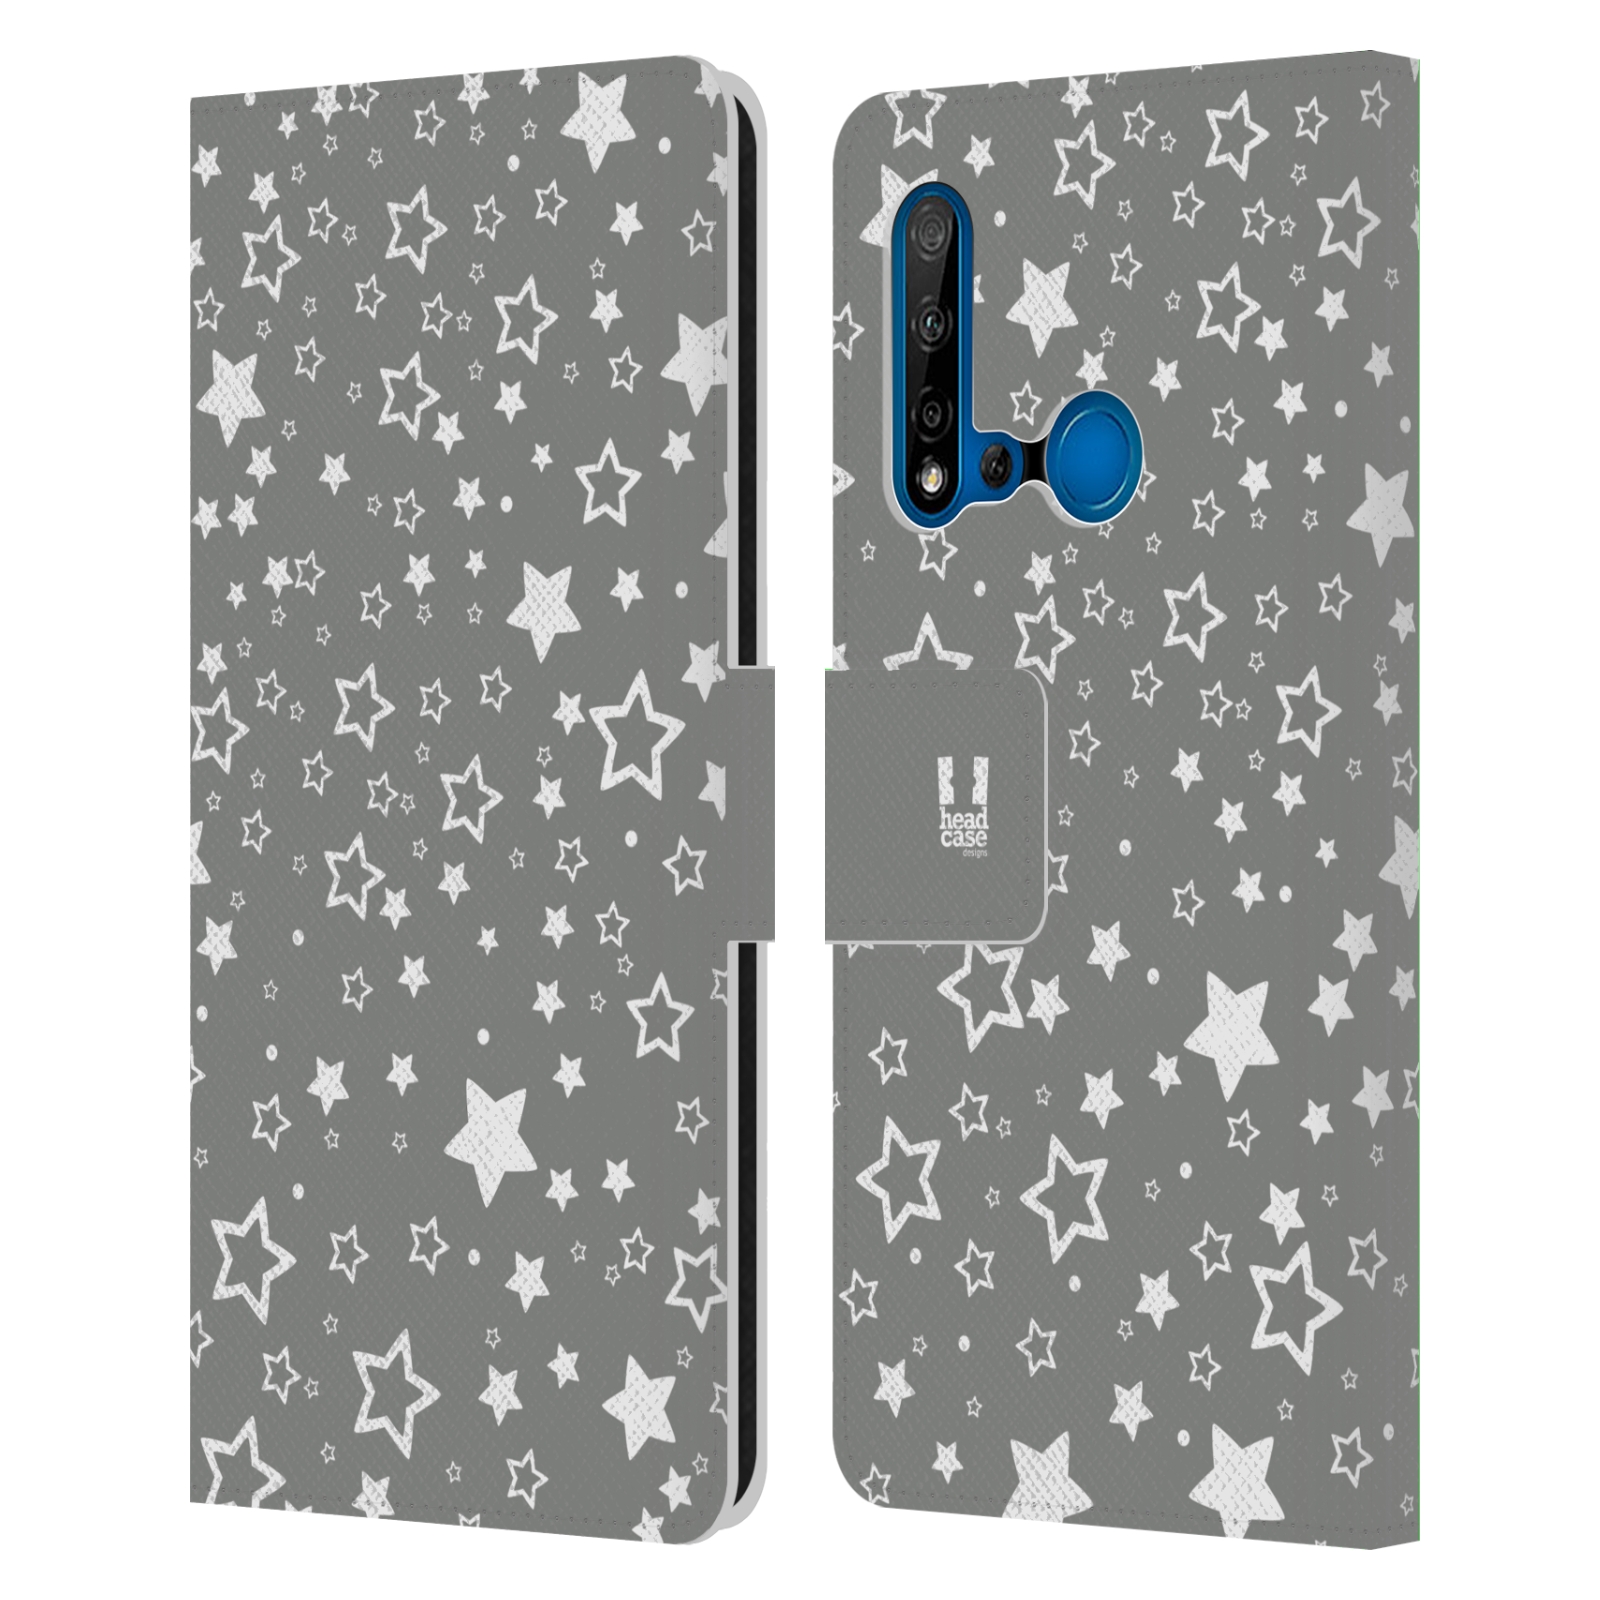 Pouzdro na mobil Huawei P20 LITE 2019 stříbrné vzory hvezdičky